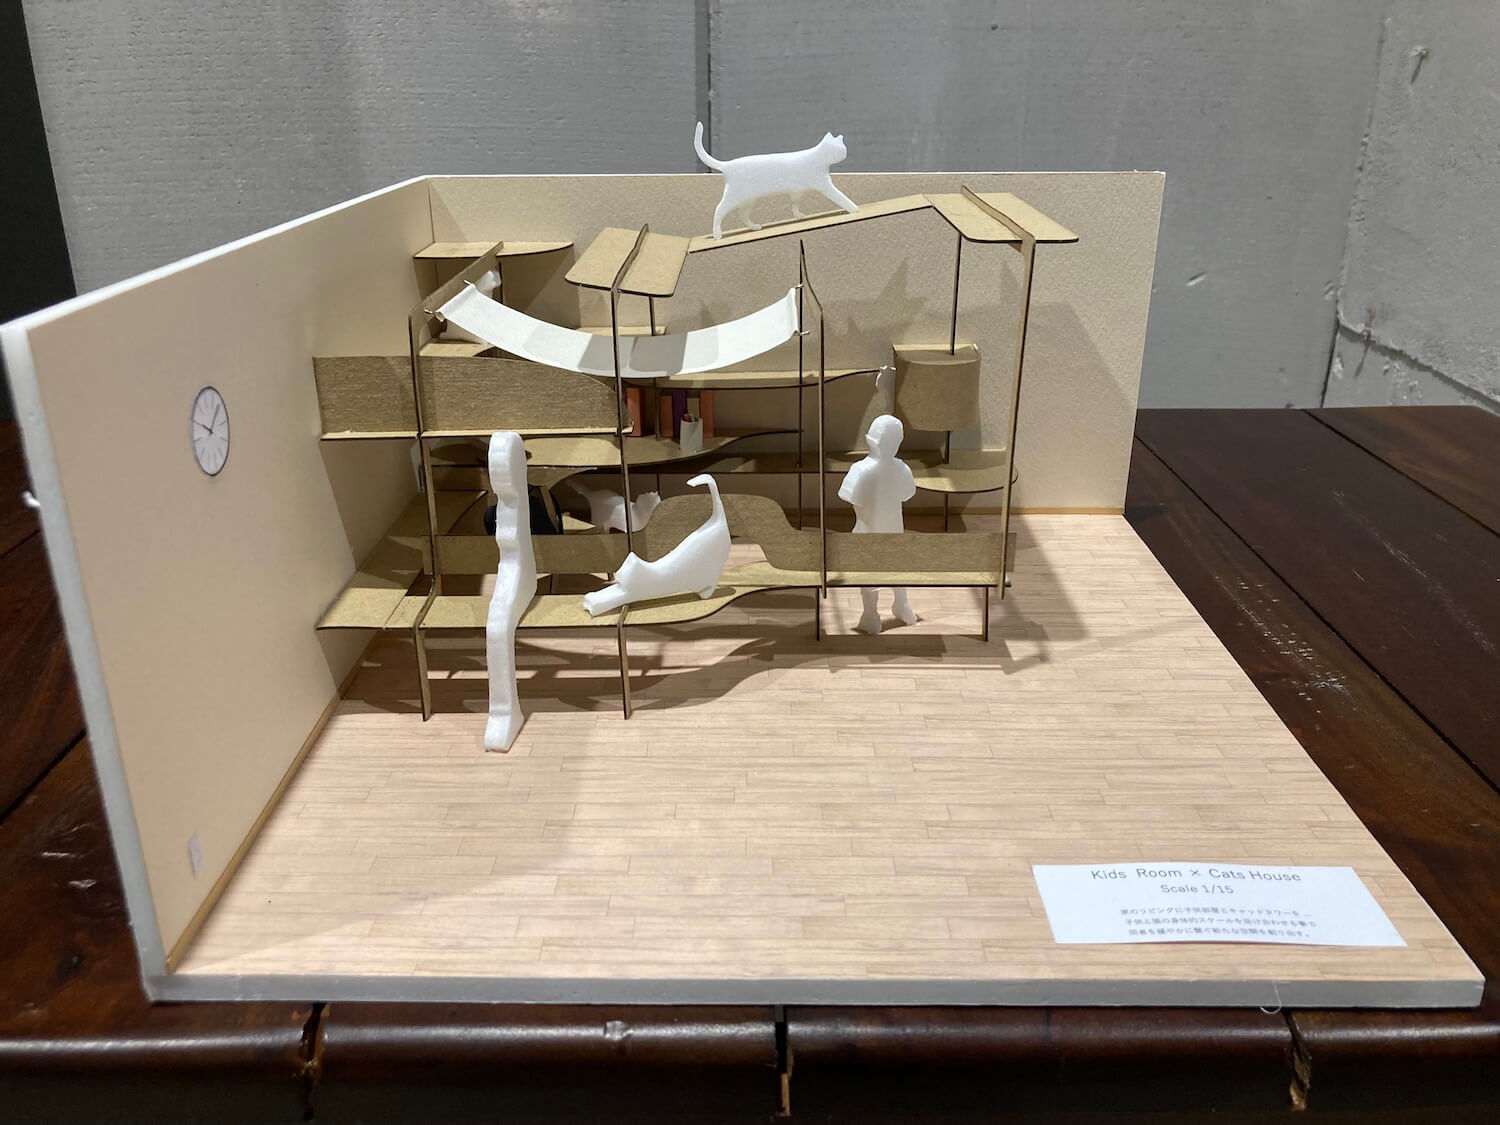 人間用のベンチと猫の遊び場が合体した「KidsRoom×CatsHouse」 by アーキテクチャカフェ棲家 第2回建築模型コンテスト「猫の棲家」優秀賞2位作品